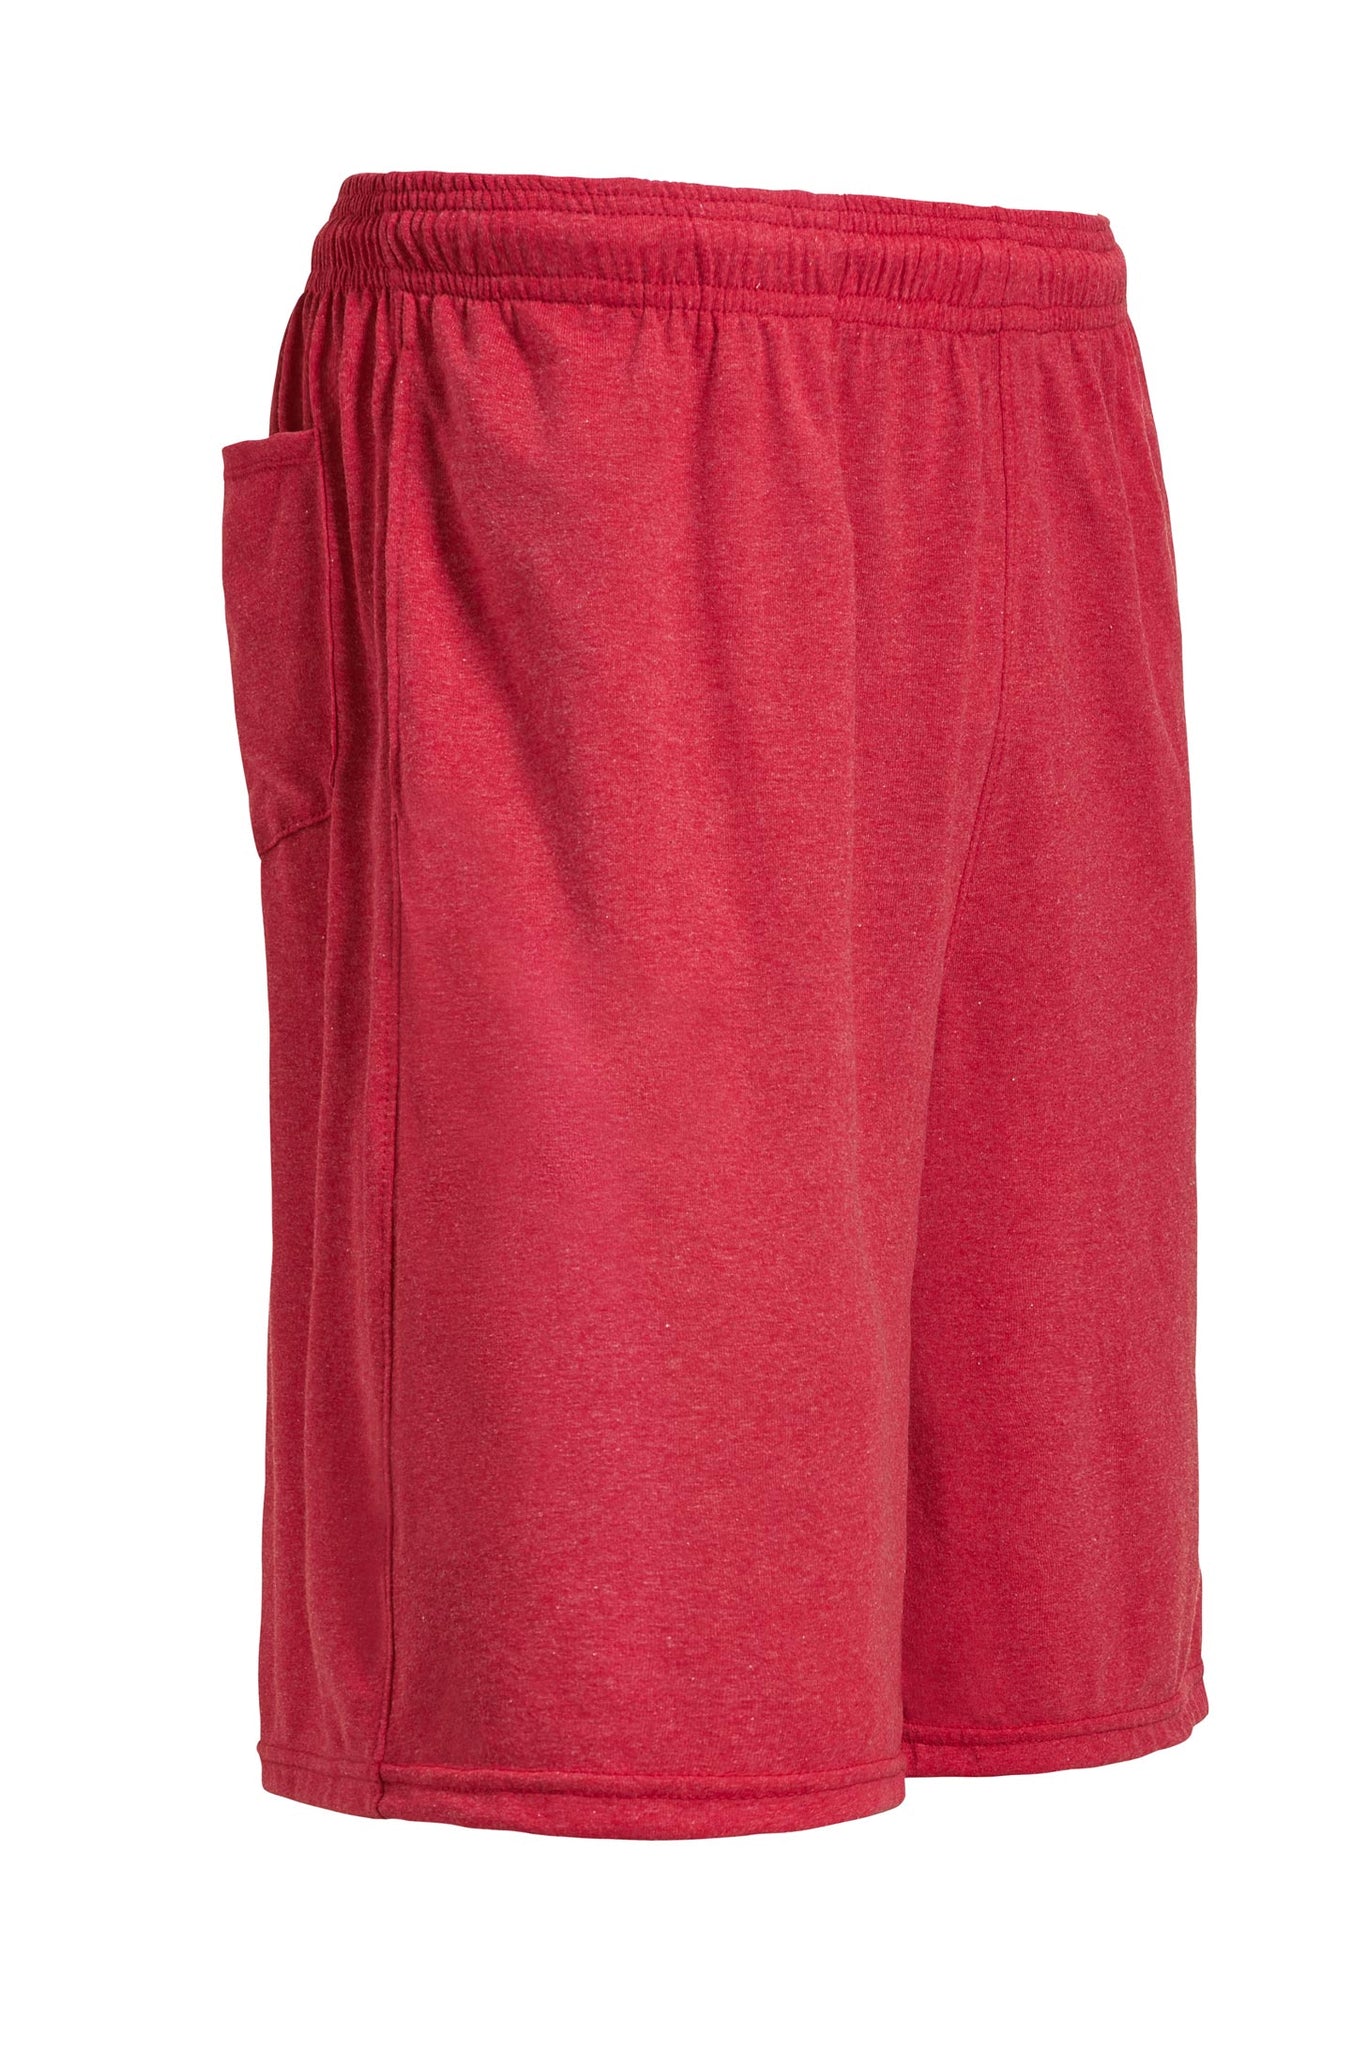 Expert Brand Wholesale Men's Gym Shorts with pockets dark heather red#dark-heather-red